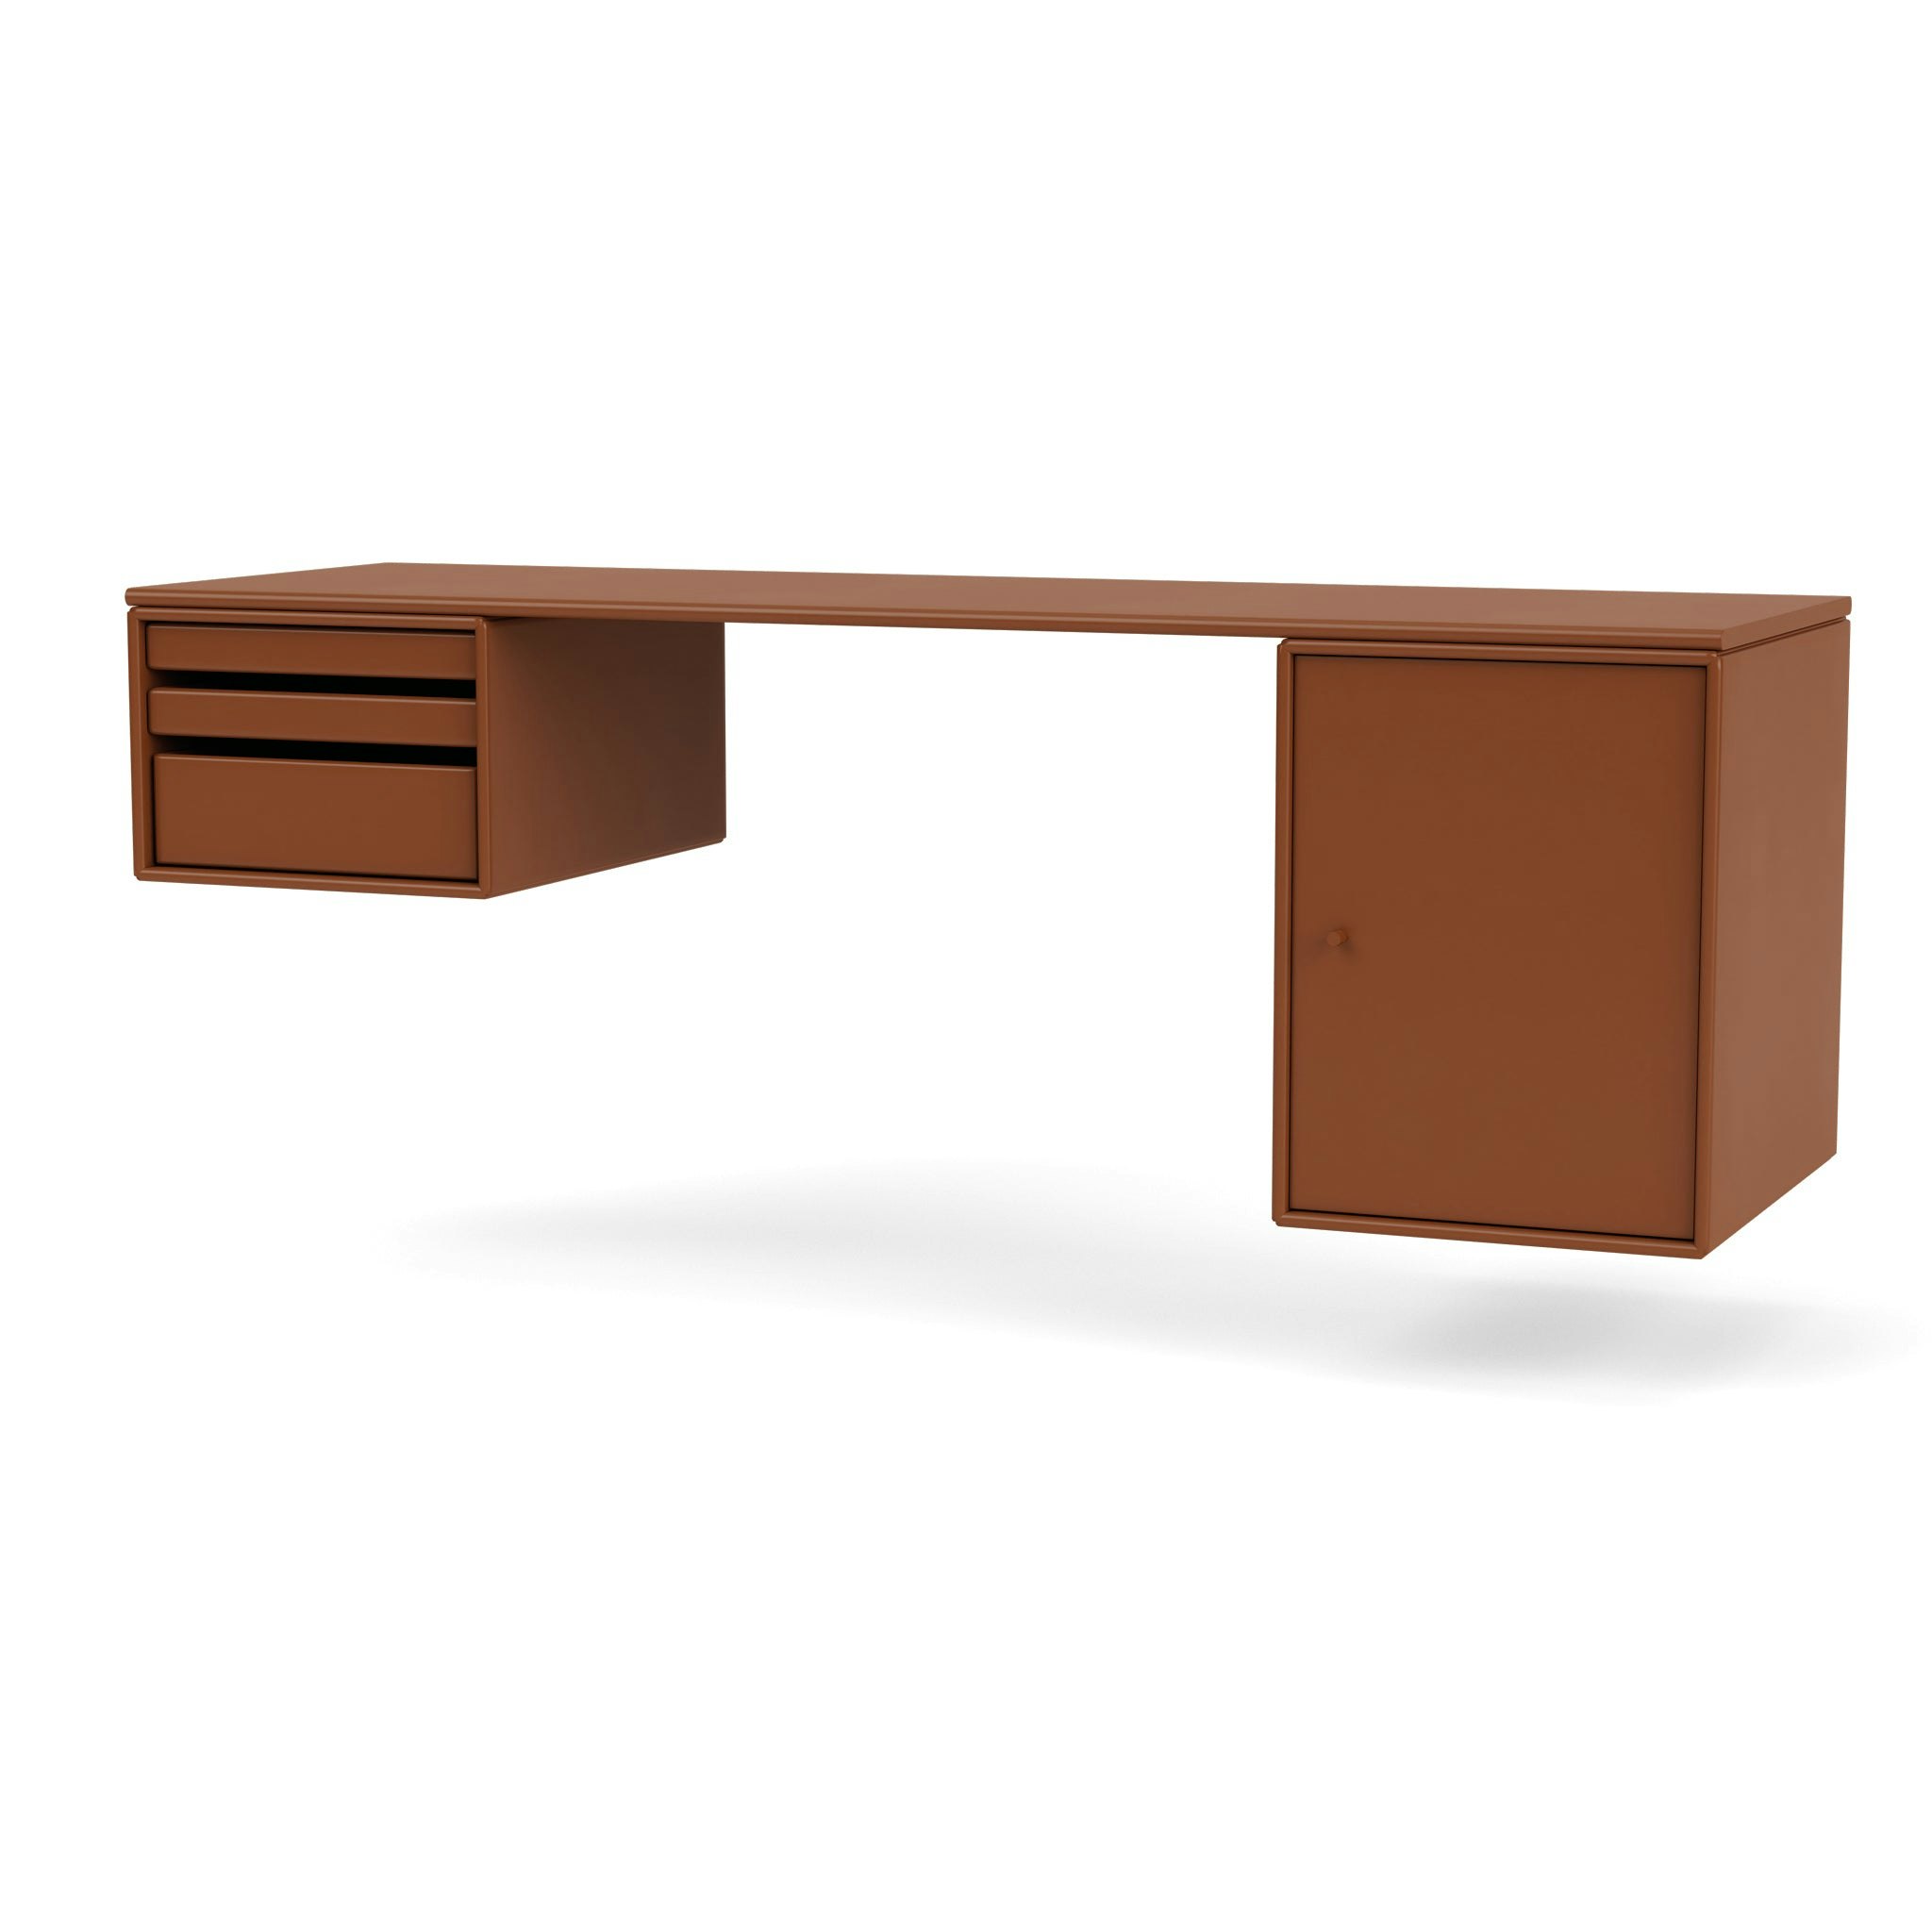 Workshop Desk by Montana Furniture